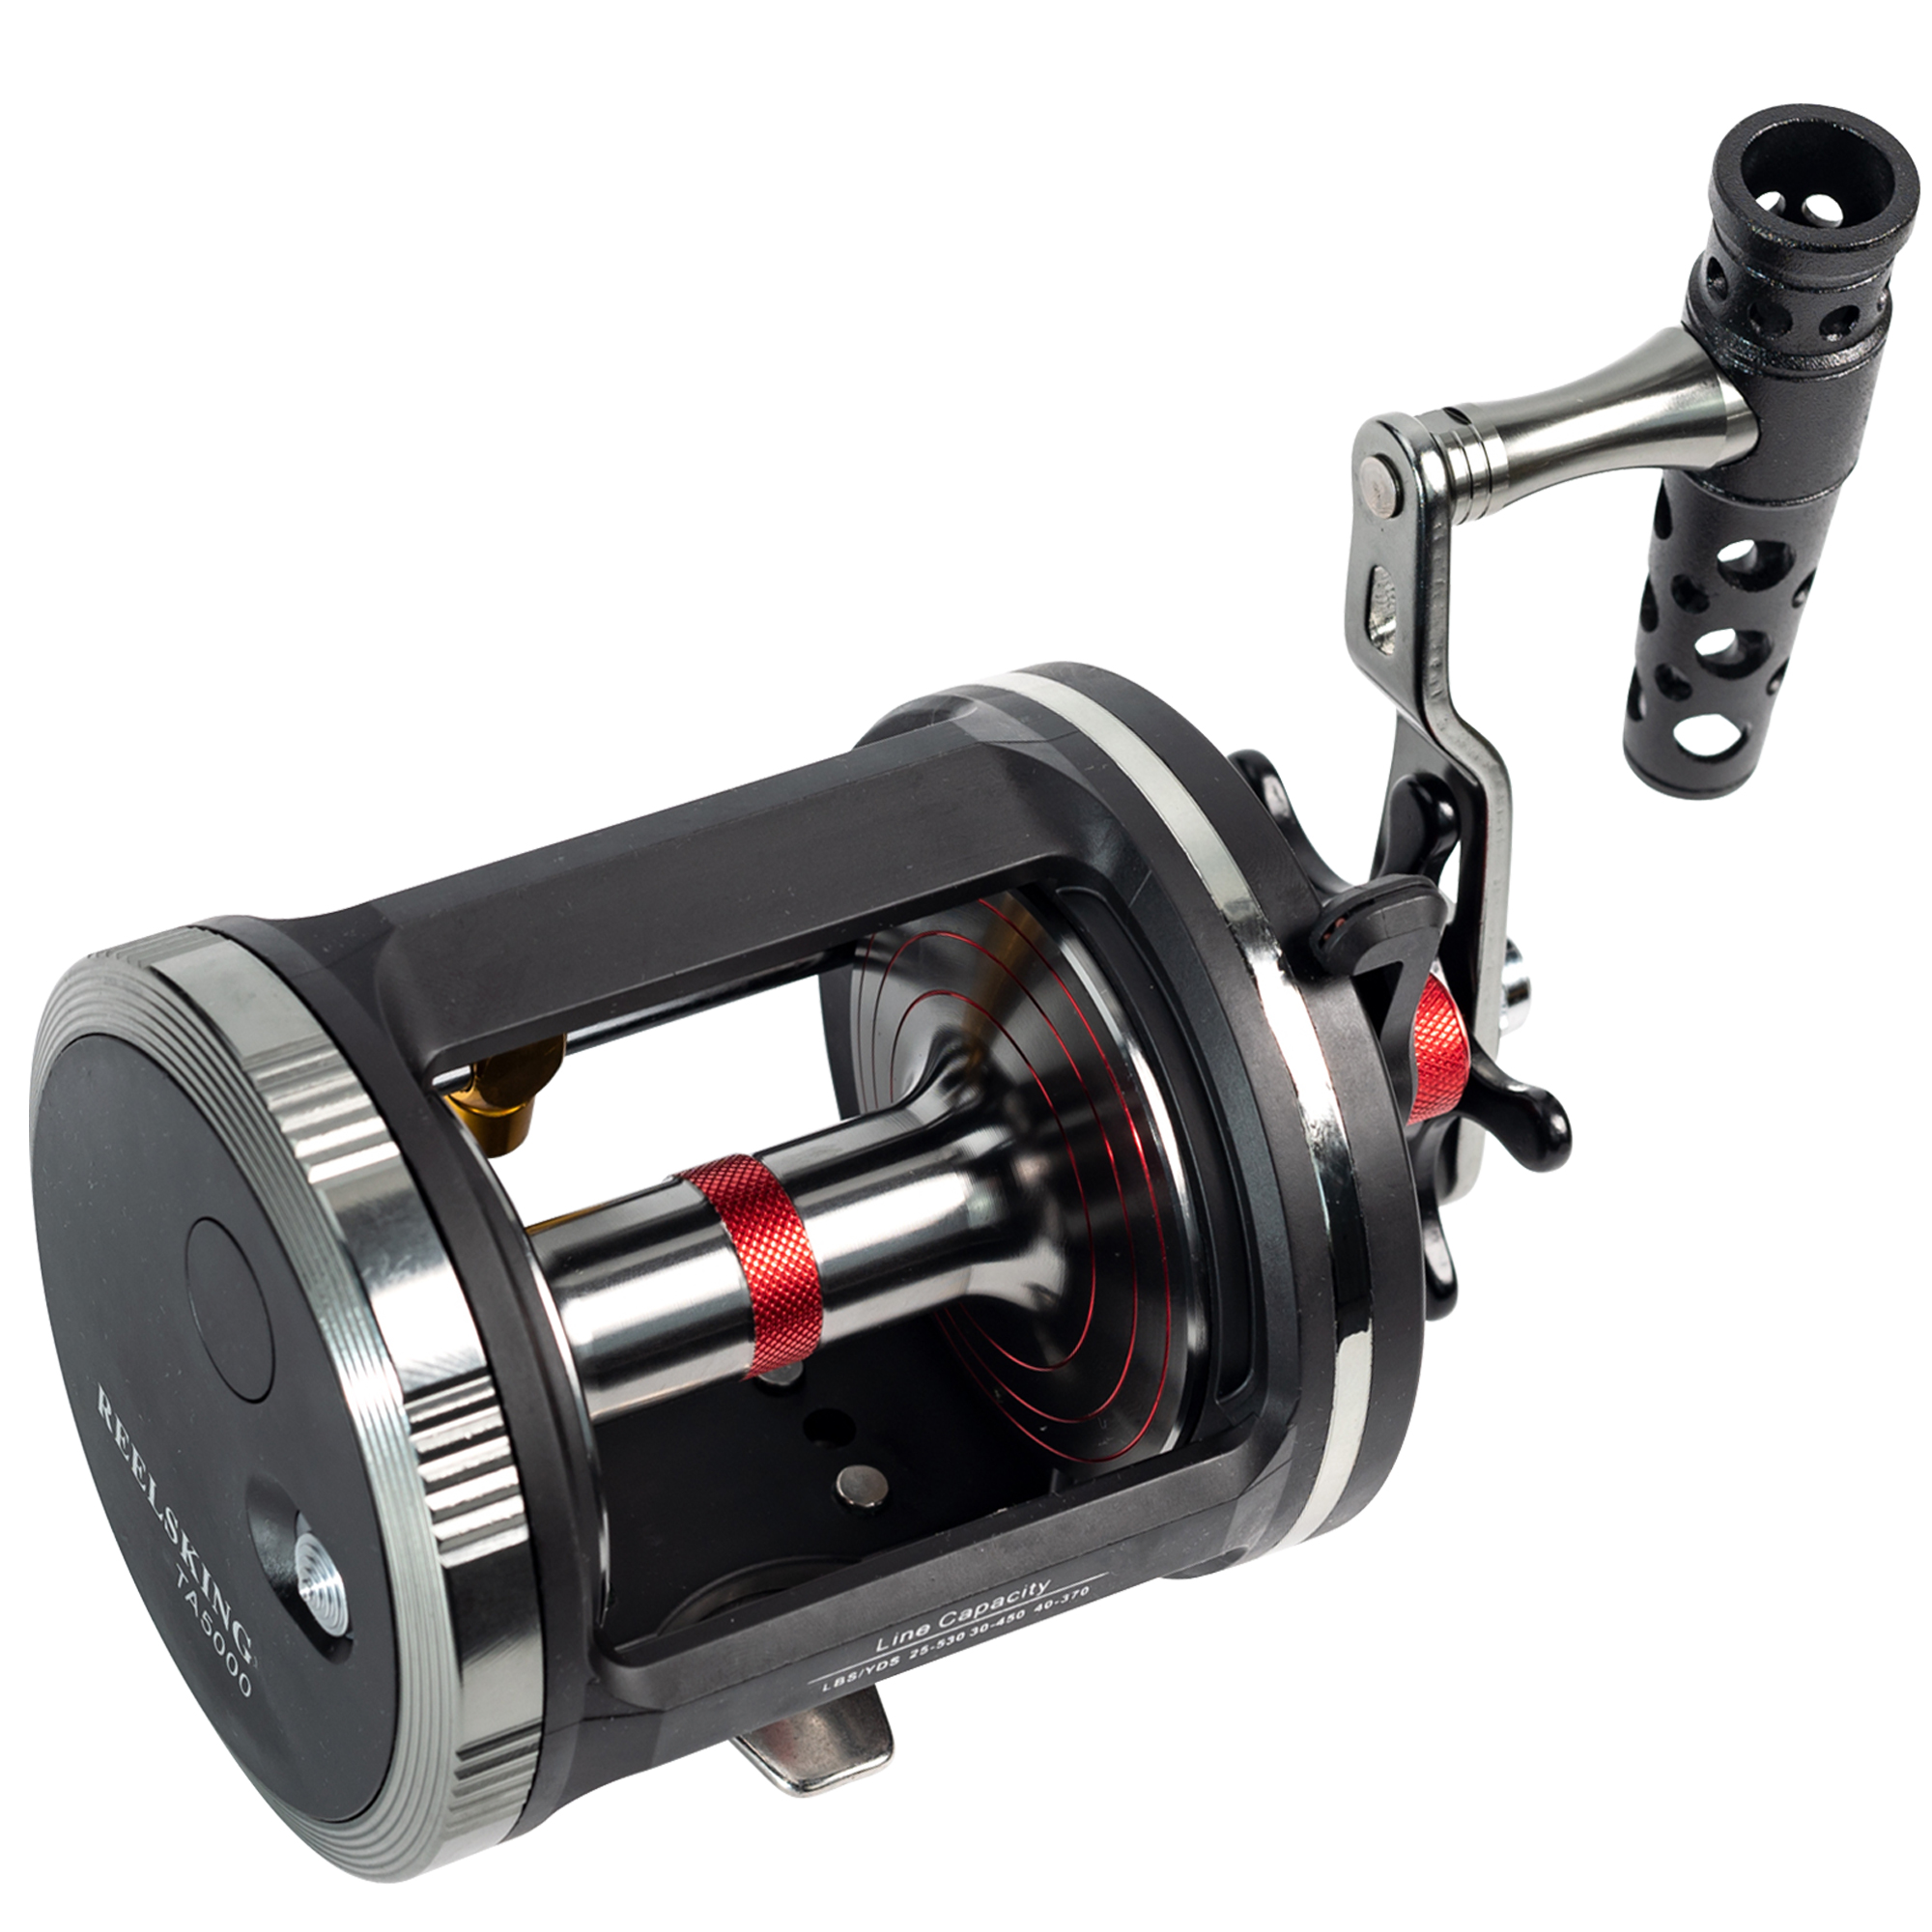 TTKD No Gap Ultralight Spinning Fishing Reel 2500 3000 Max Drag